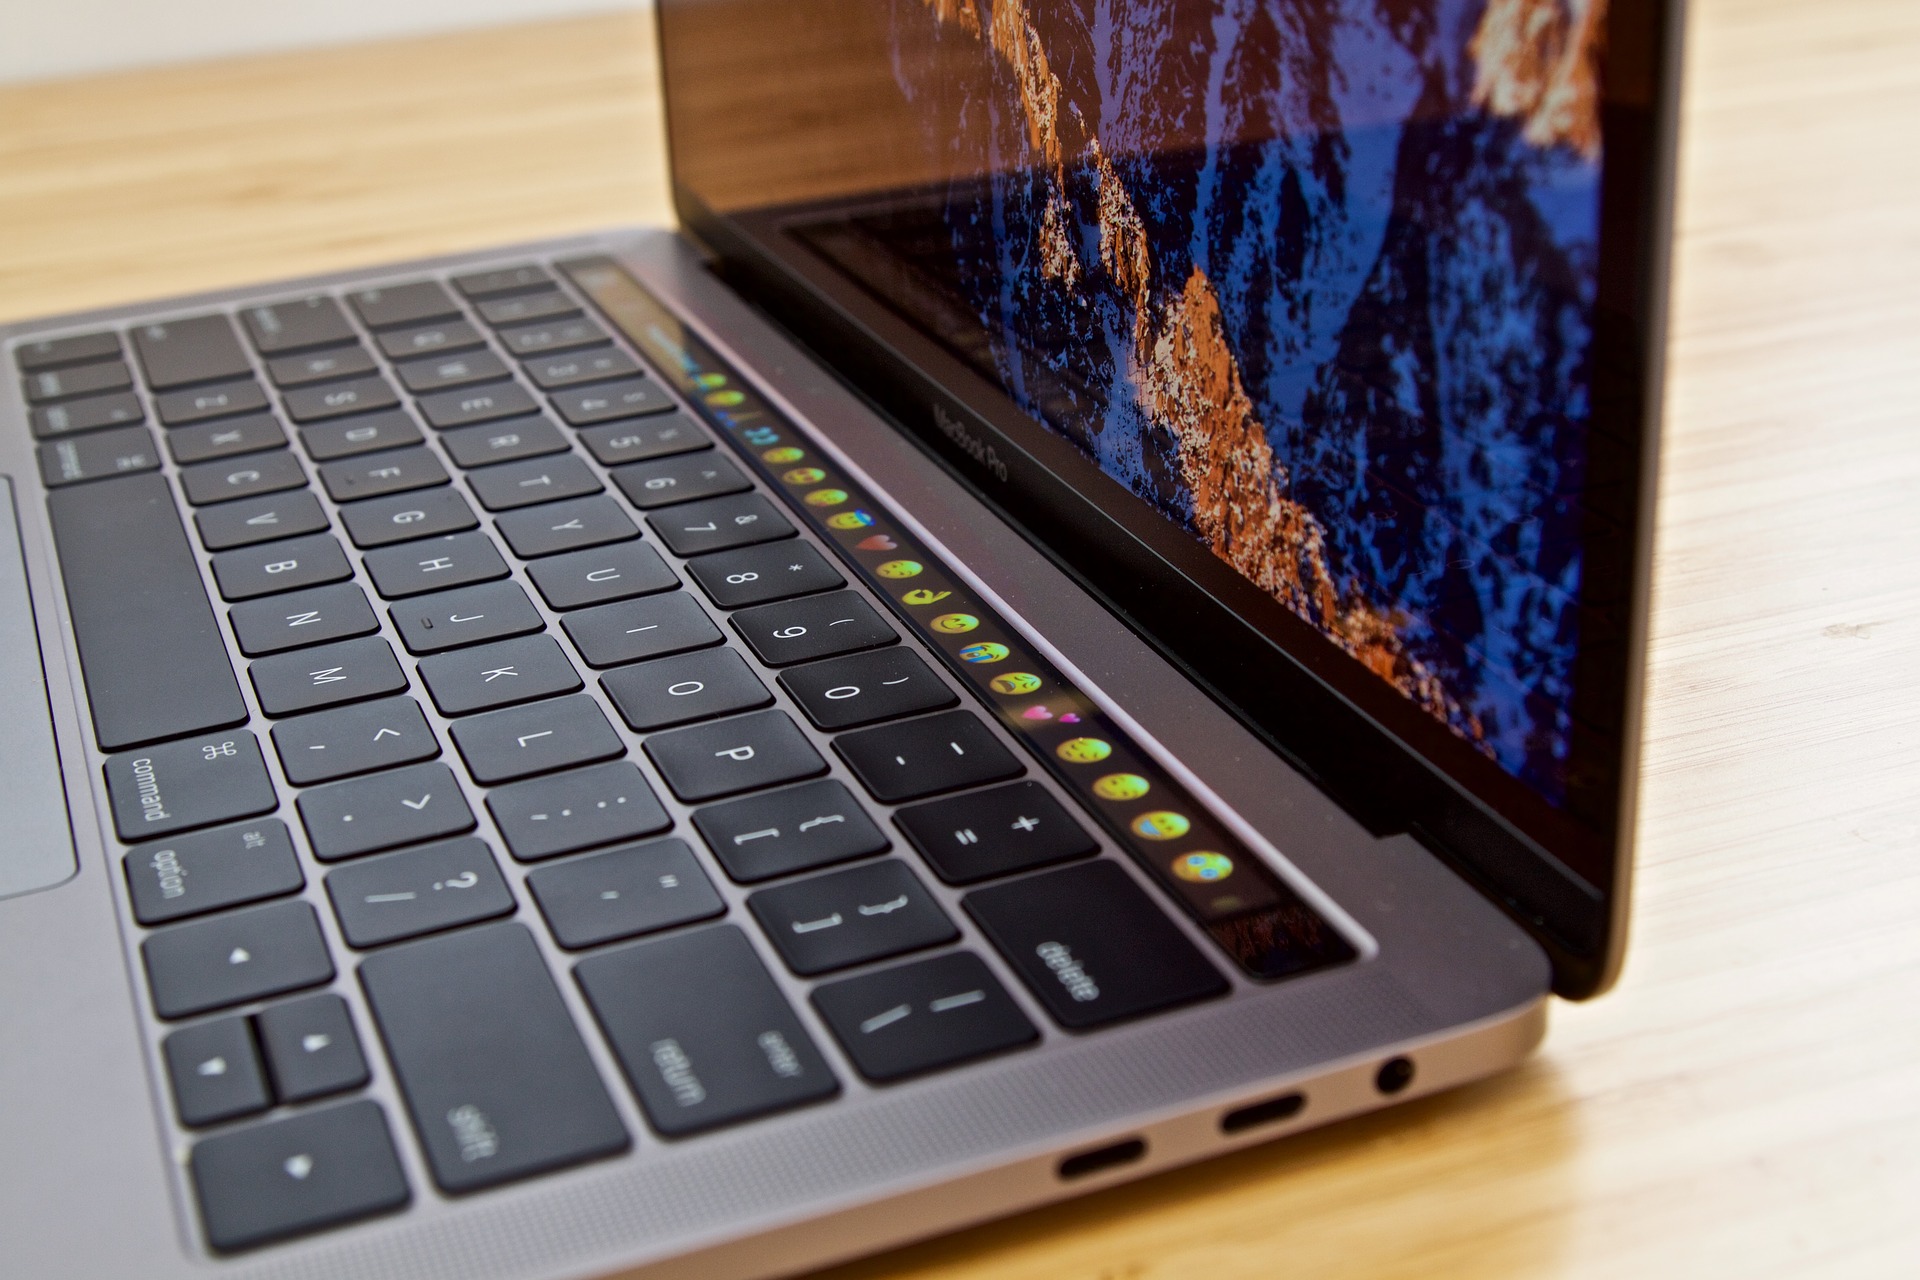 Četvrta generacija MacBook Proa predstavljena u listopadu 2016. godine, znakovita je zbog par stvari. Radi se o prvom Appleovom kompjuteru koji je sadržavao neki oblik ekrana na dodir, u ovom slučaju malenog TouchBara smještenog u tipkovnici umjesto najgornjeg reda funkcijskih tipaka. Radi se također o prvom laptopu Pro serije koji je sadržavao samo USB-C utore, umjesto konvencionalnih USB-A utora, utora za mrežu i čitača kartica. Međutim, prvo računalo koje je imalo samo USB-C utor je bio laptop MacBook, predstavljen 2015. godine sa samo jednim USB-C utorom i utorom za slušalice.